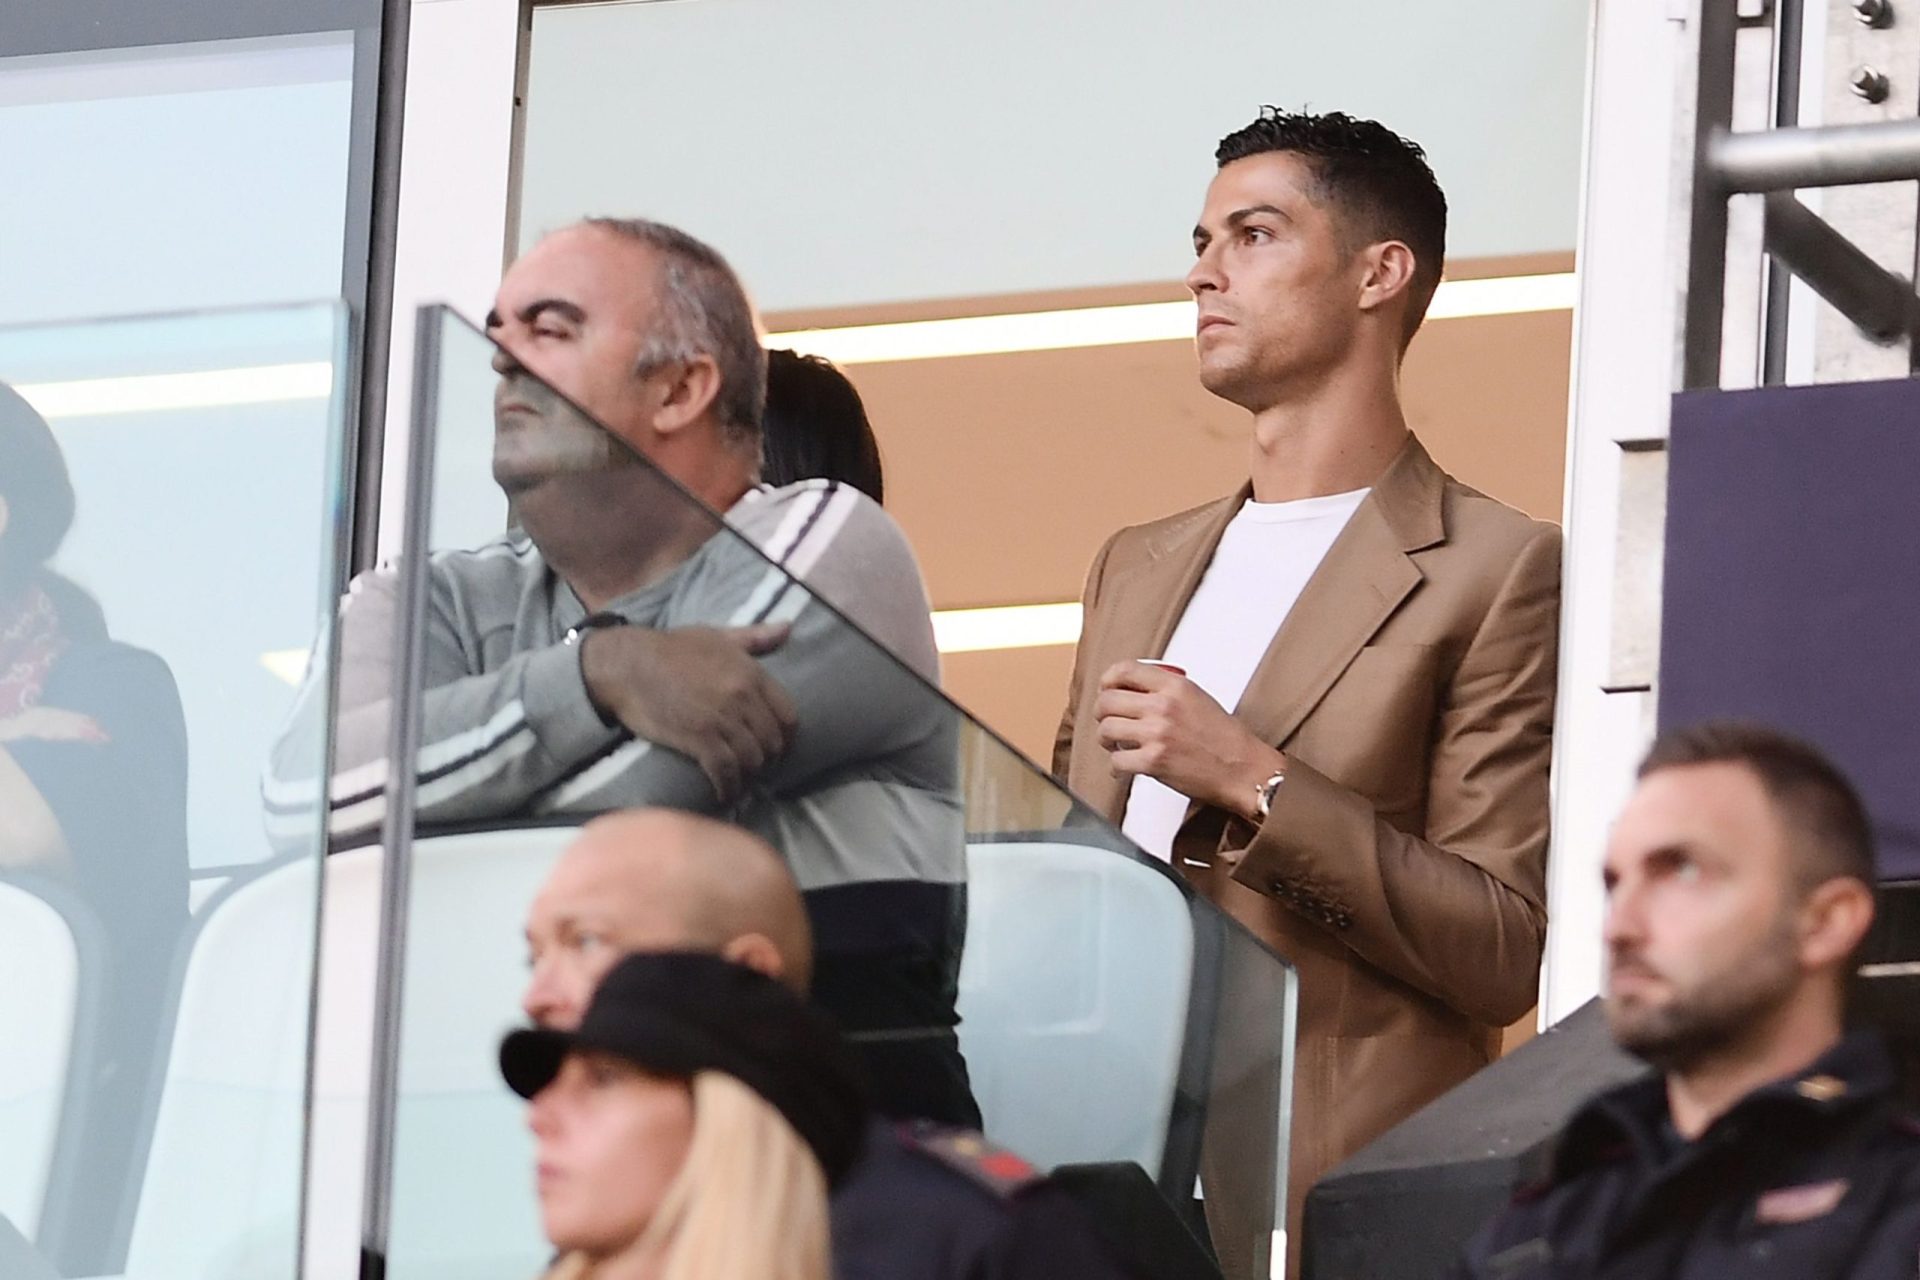 Ronaldo: “Ela disse não e pediu para parar várias vezes”